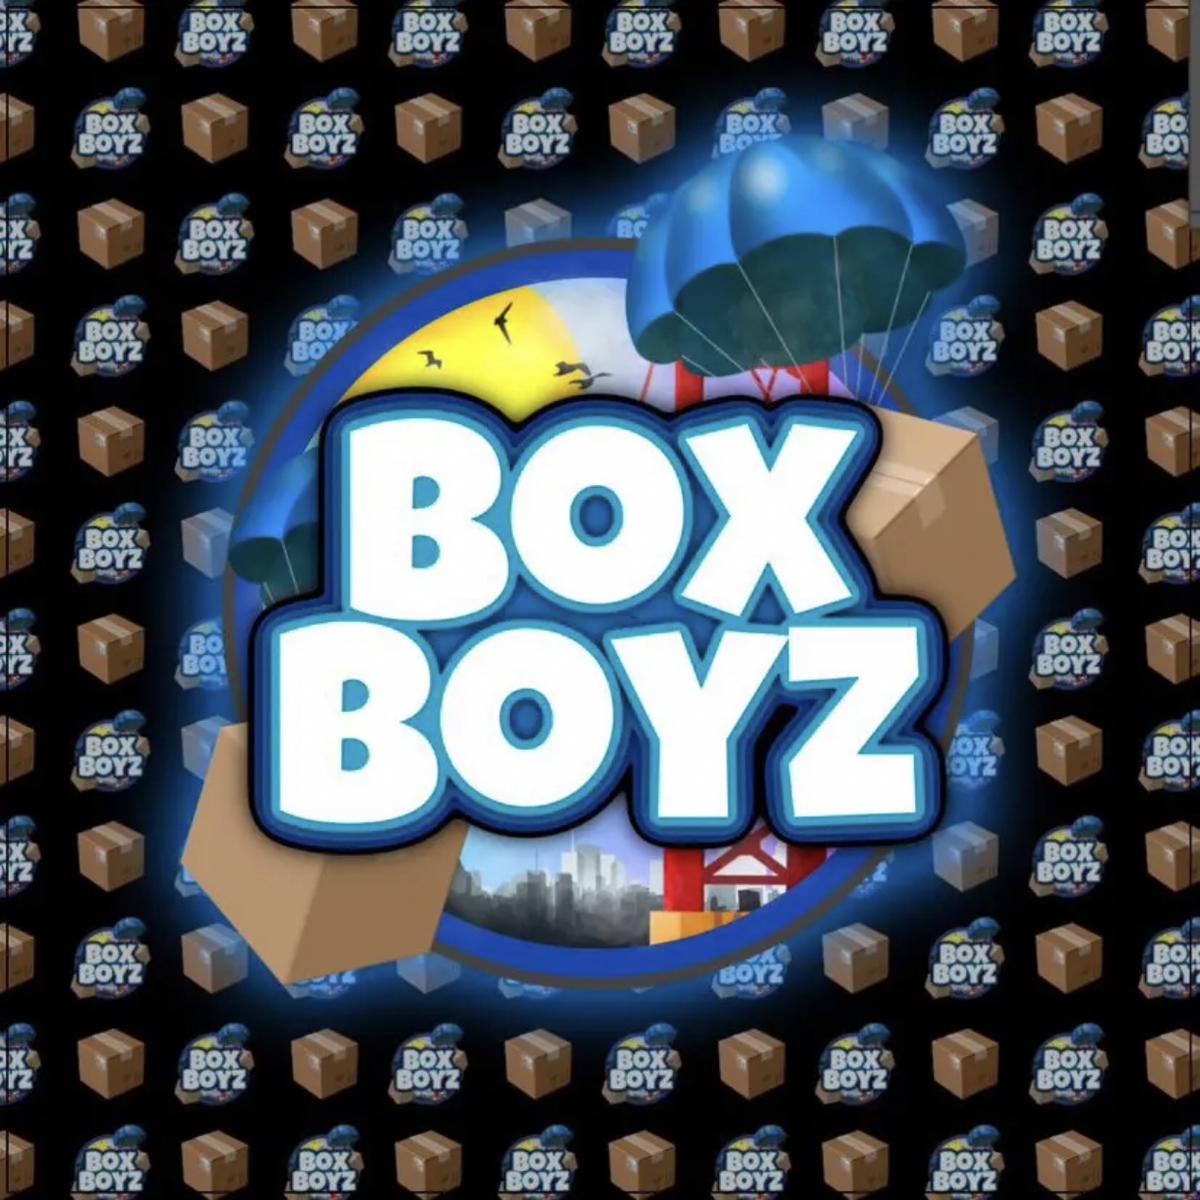 BoxBoyz's images